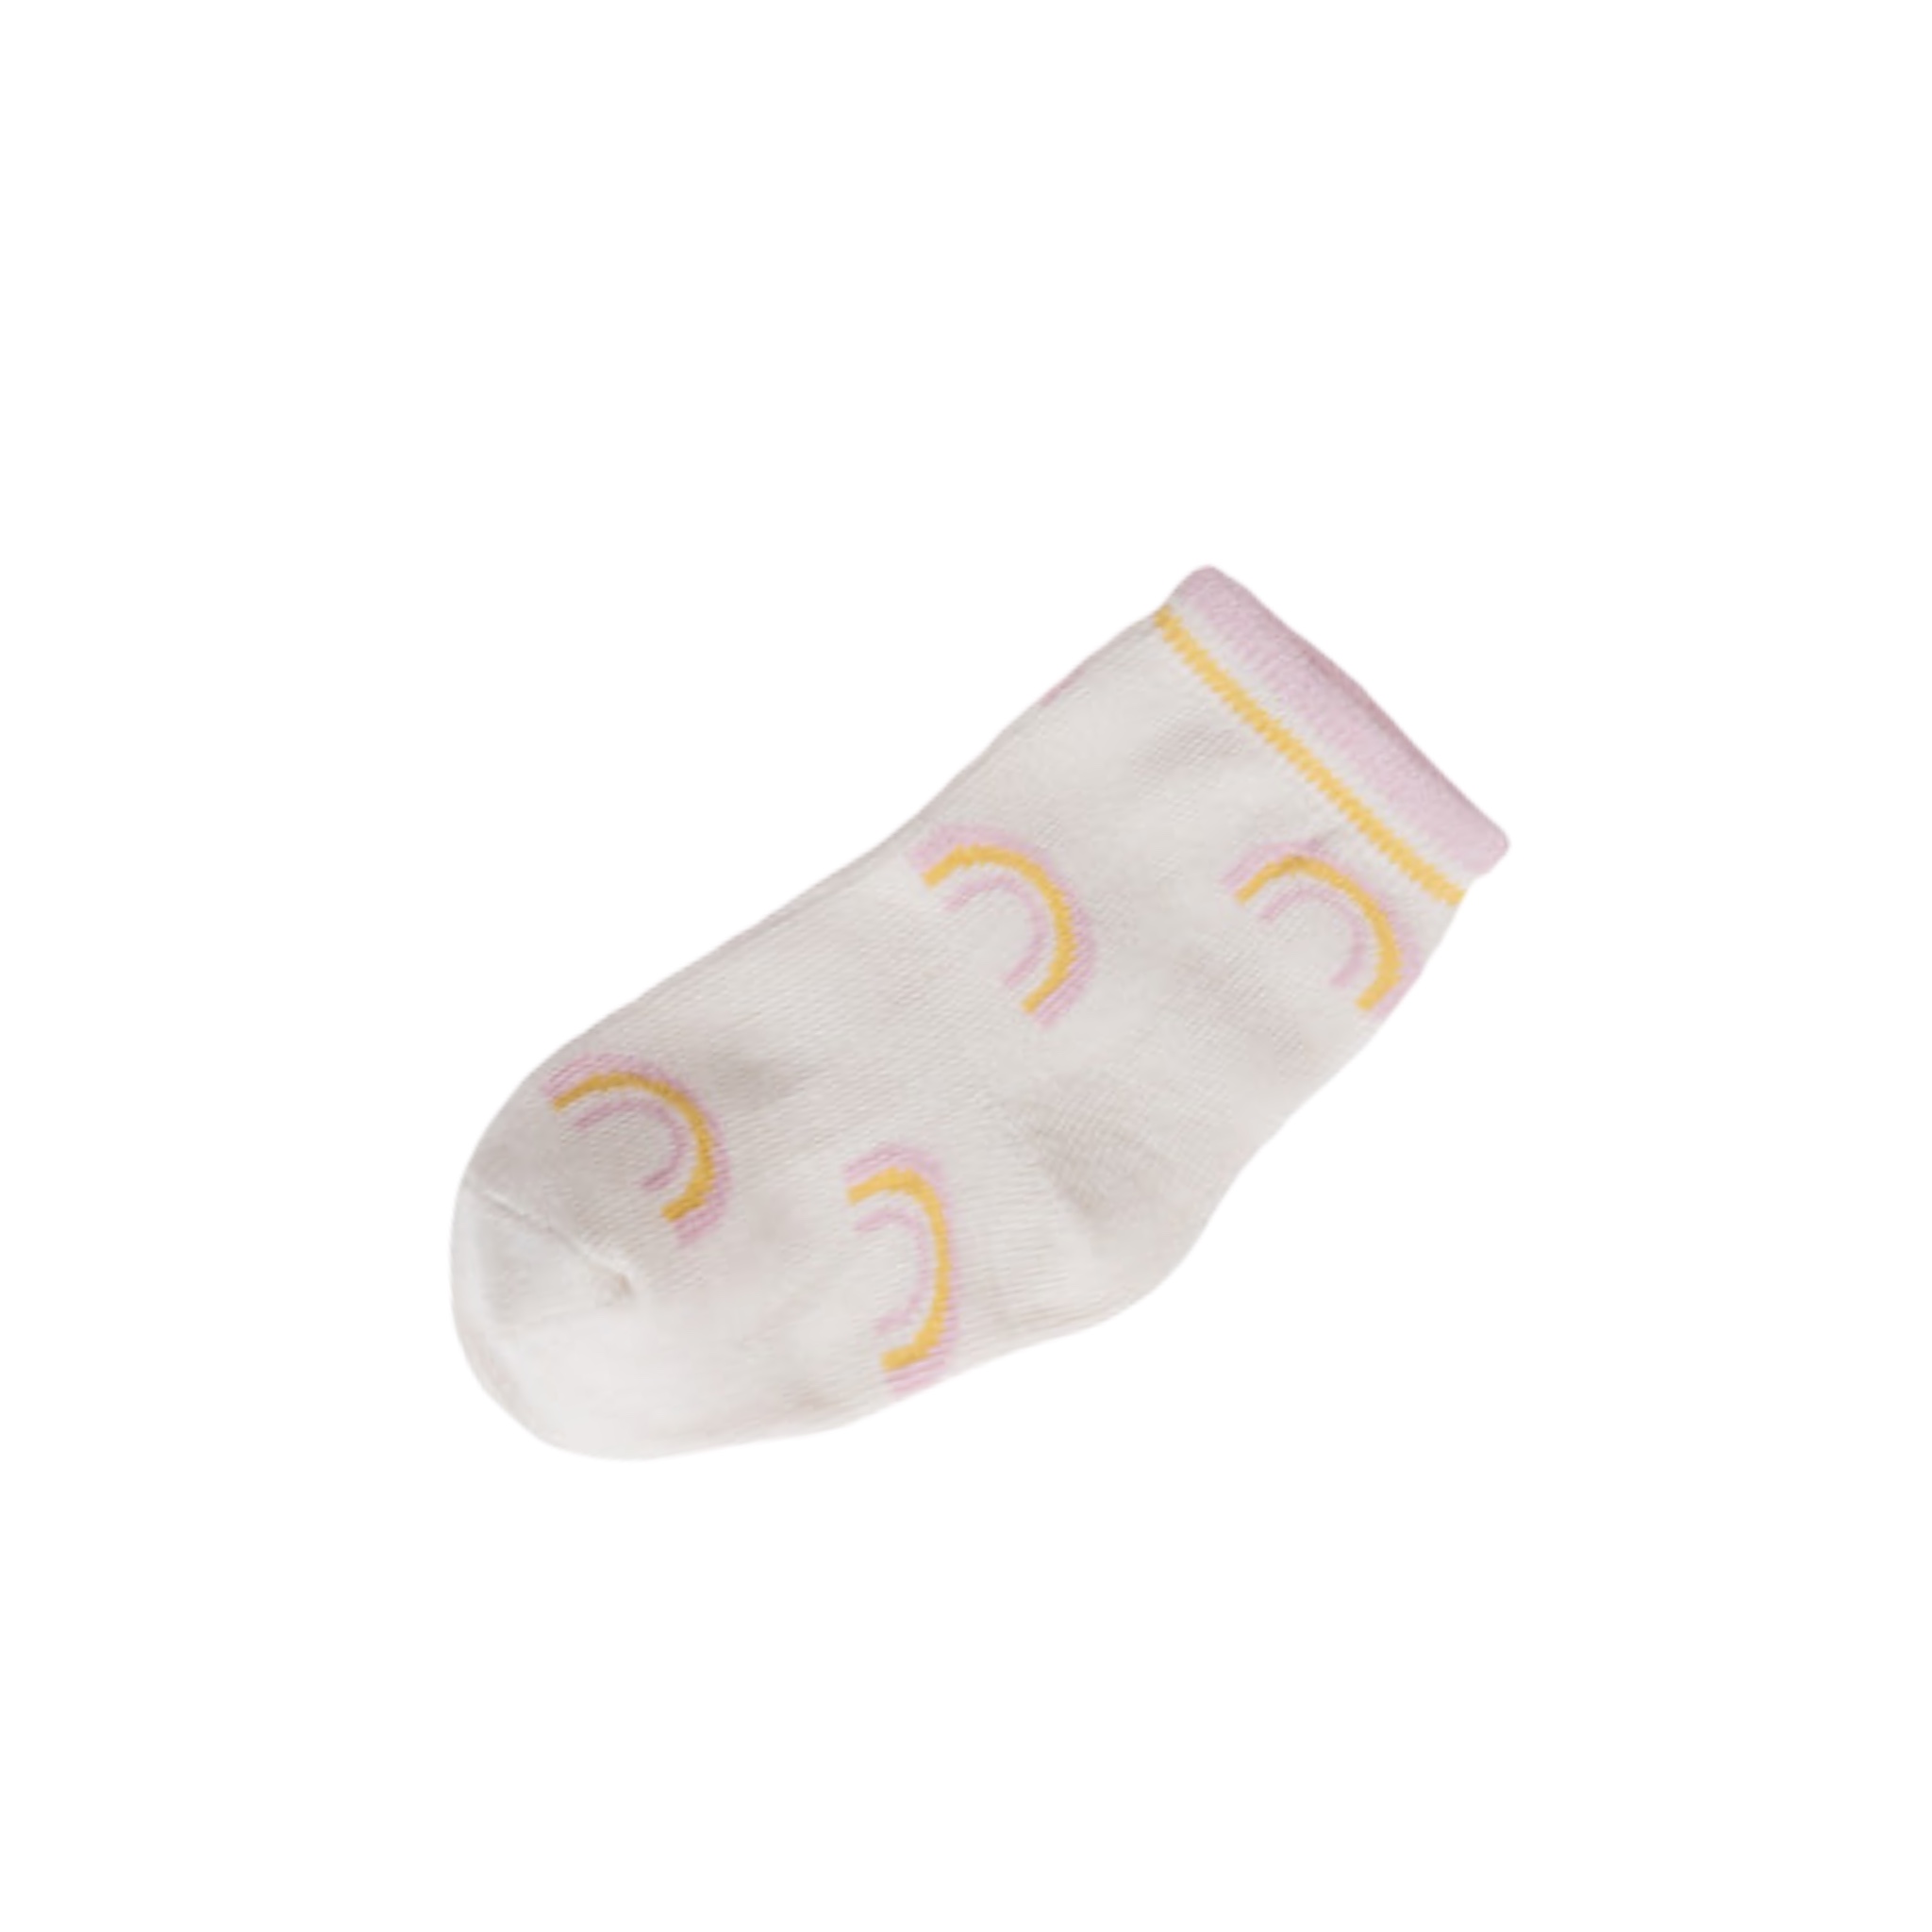 BRUBAKER 3 pares de calcetines para bebé niña de 0 a 12 meses, con  volantes, lunares, flores, rayas, en caja de regalo